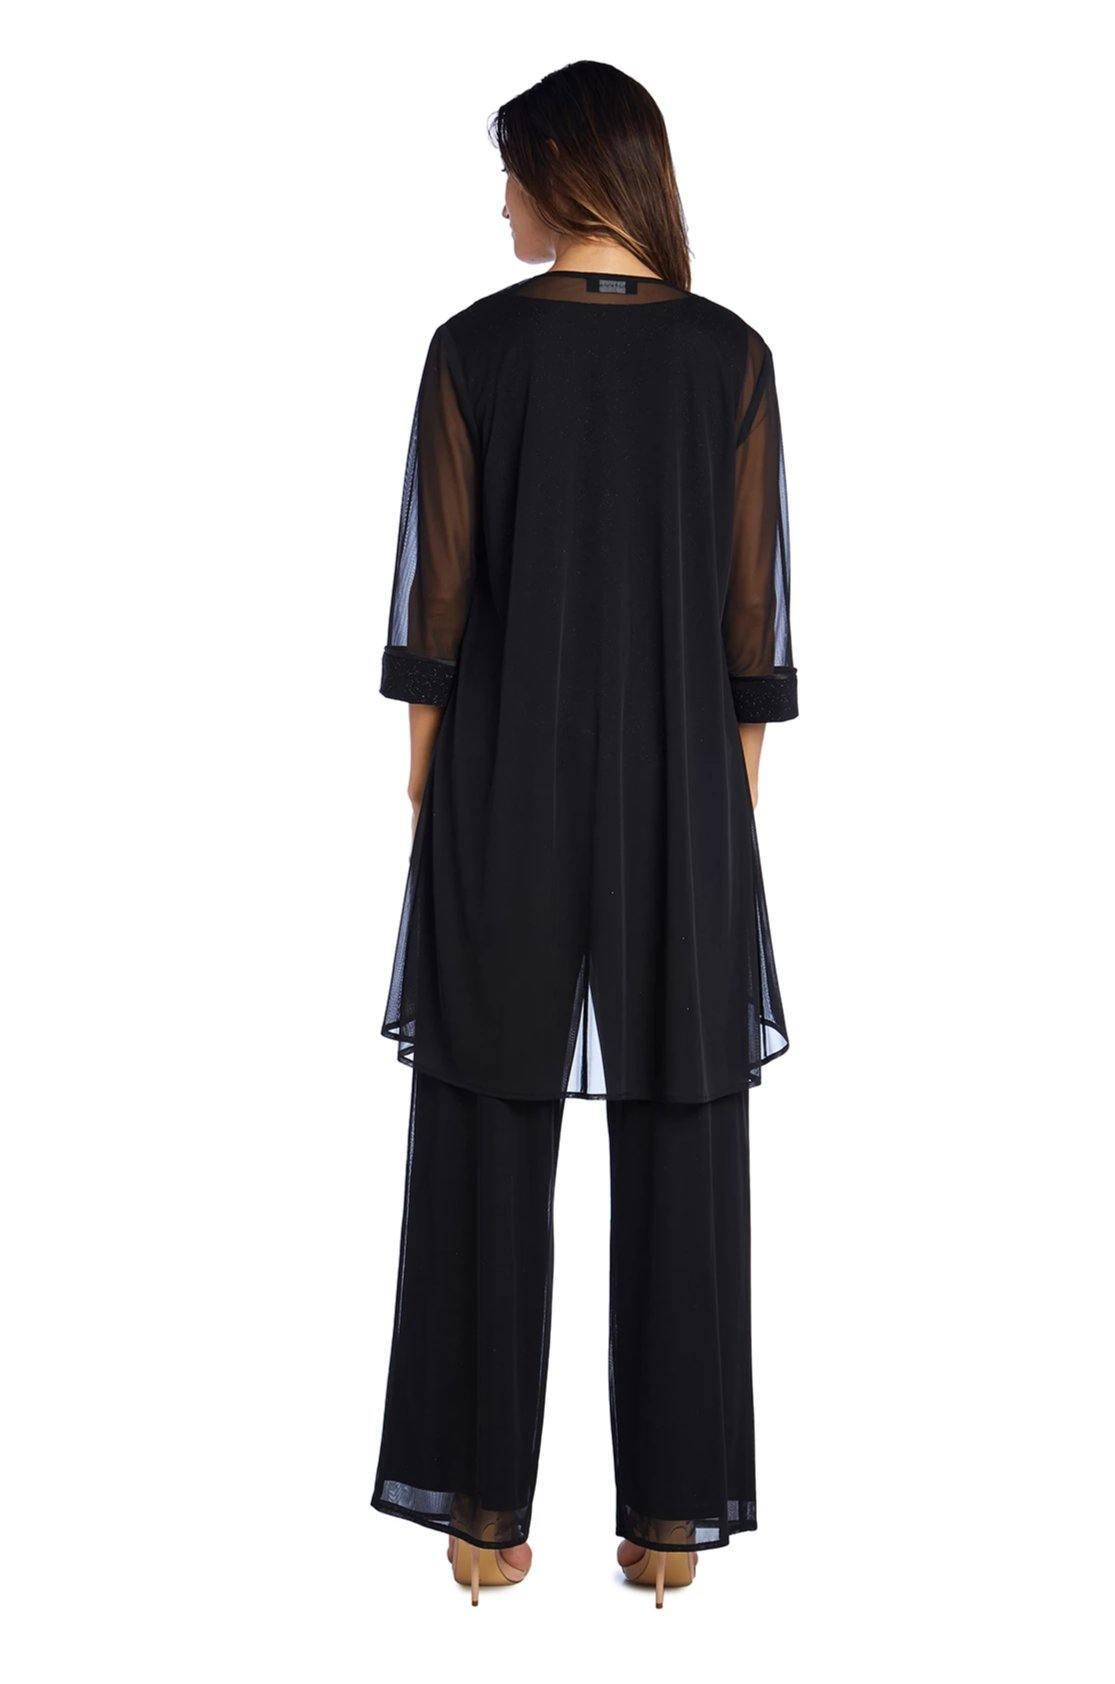 R&M Richards Formal Pantsuit Sale - The Dress Outlet